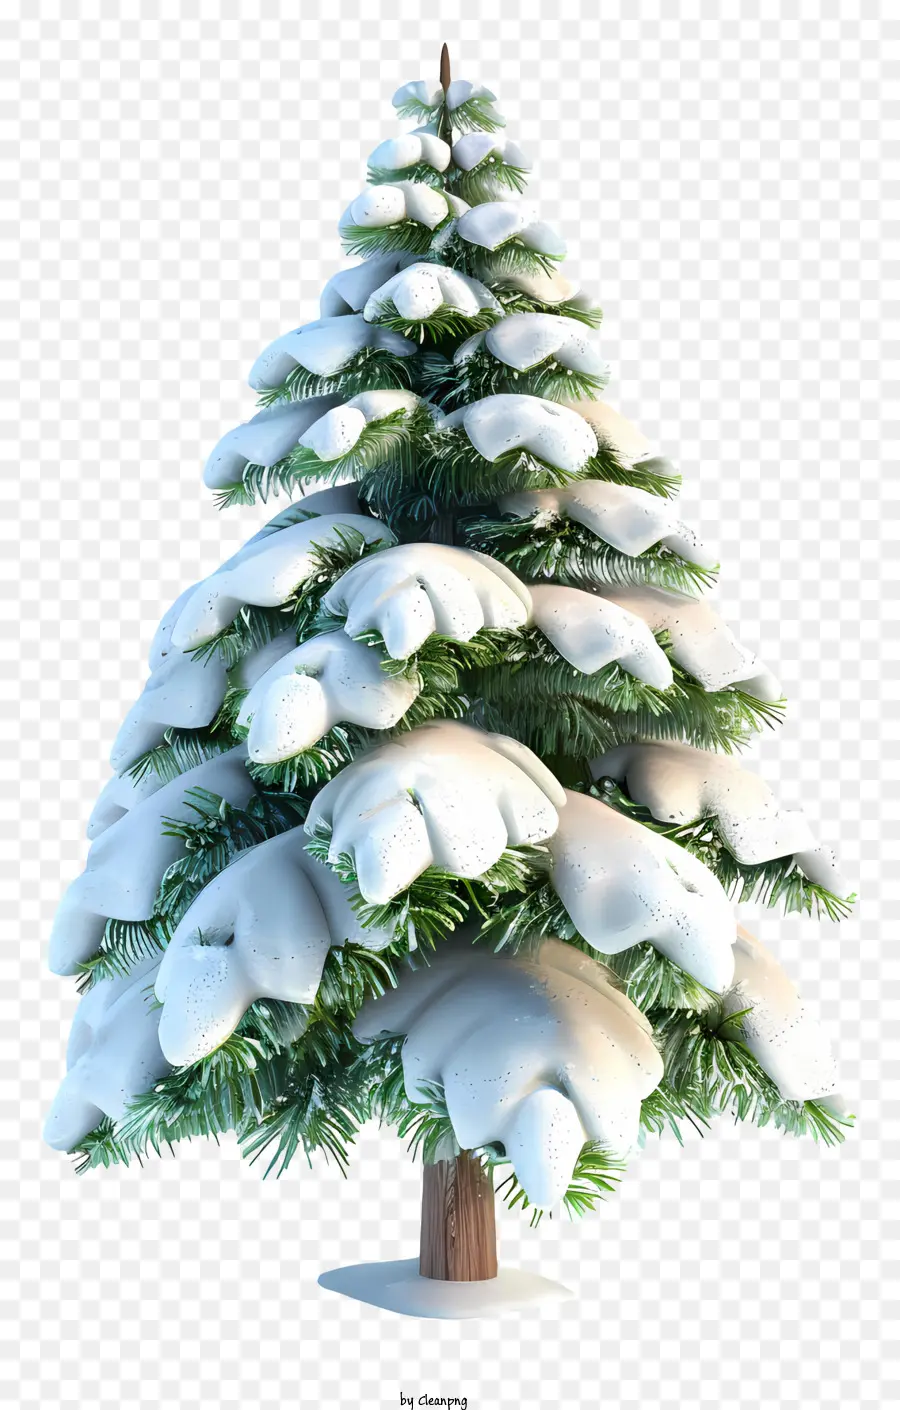 đồ trang trí giáng sinh - Cây Giáng sinh phủ đầy tuyết trên nền đen